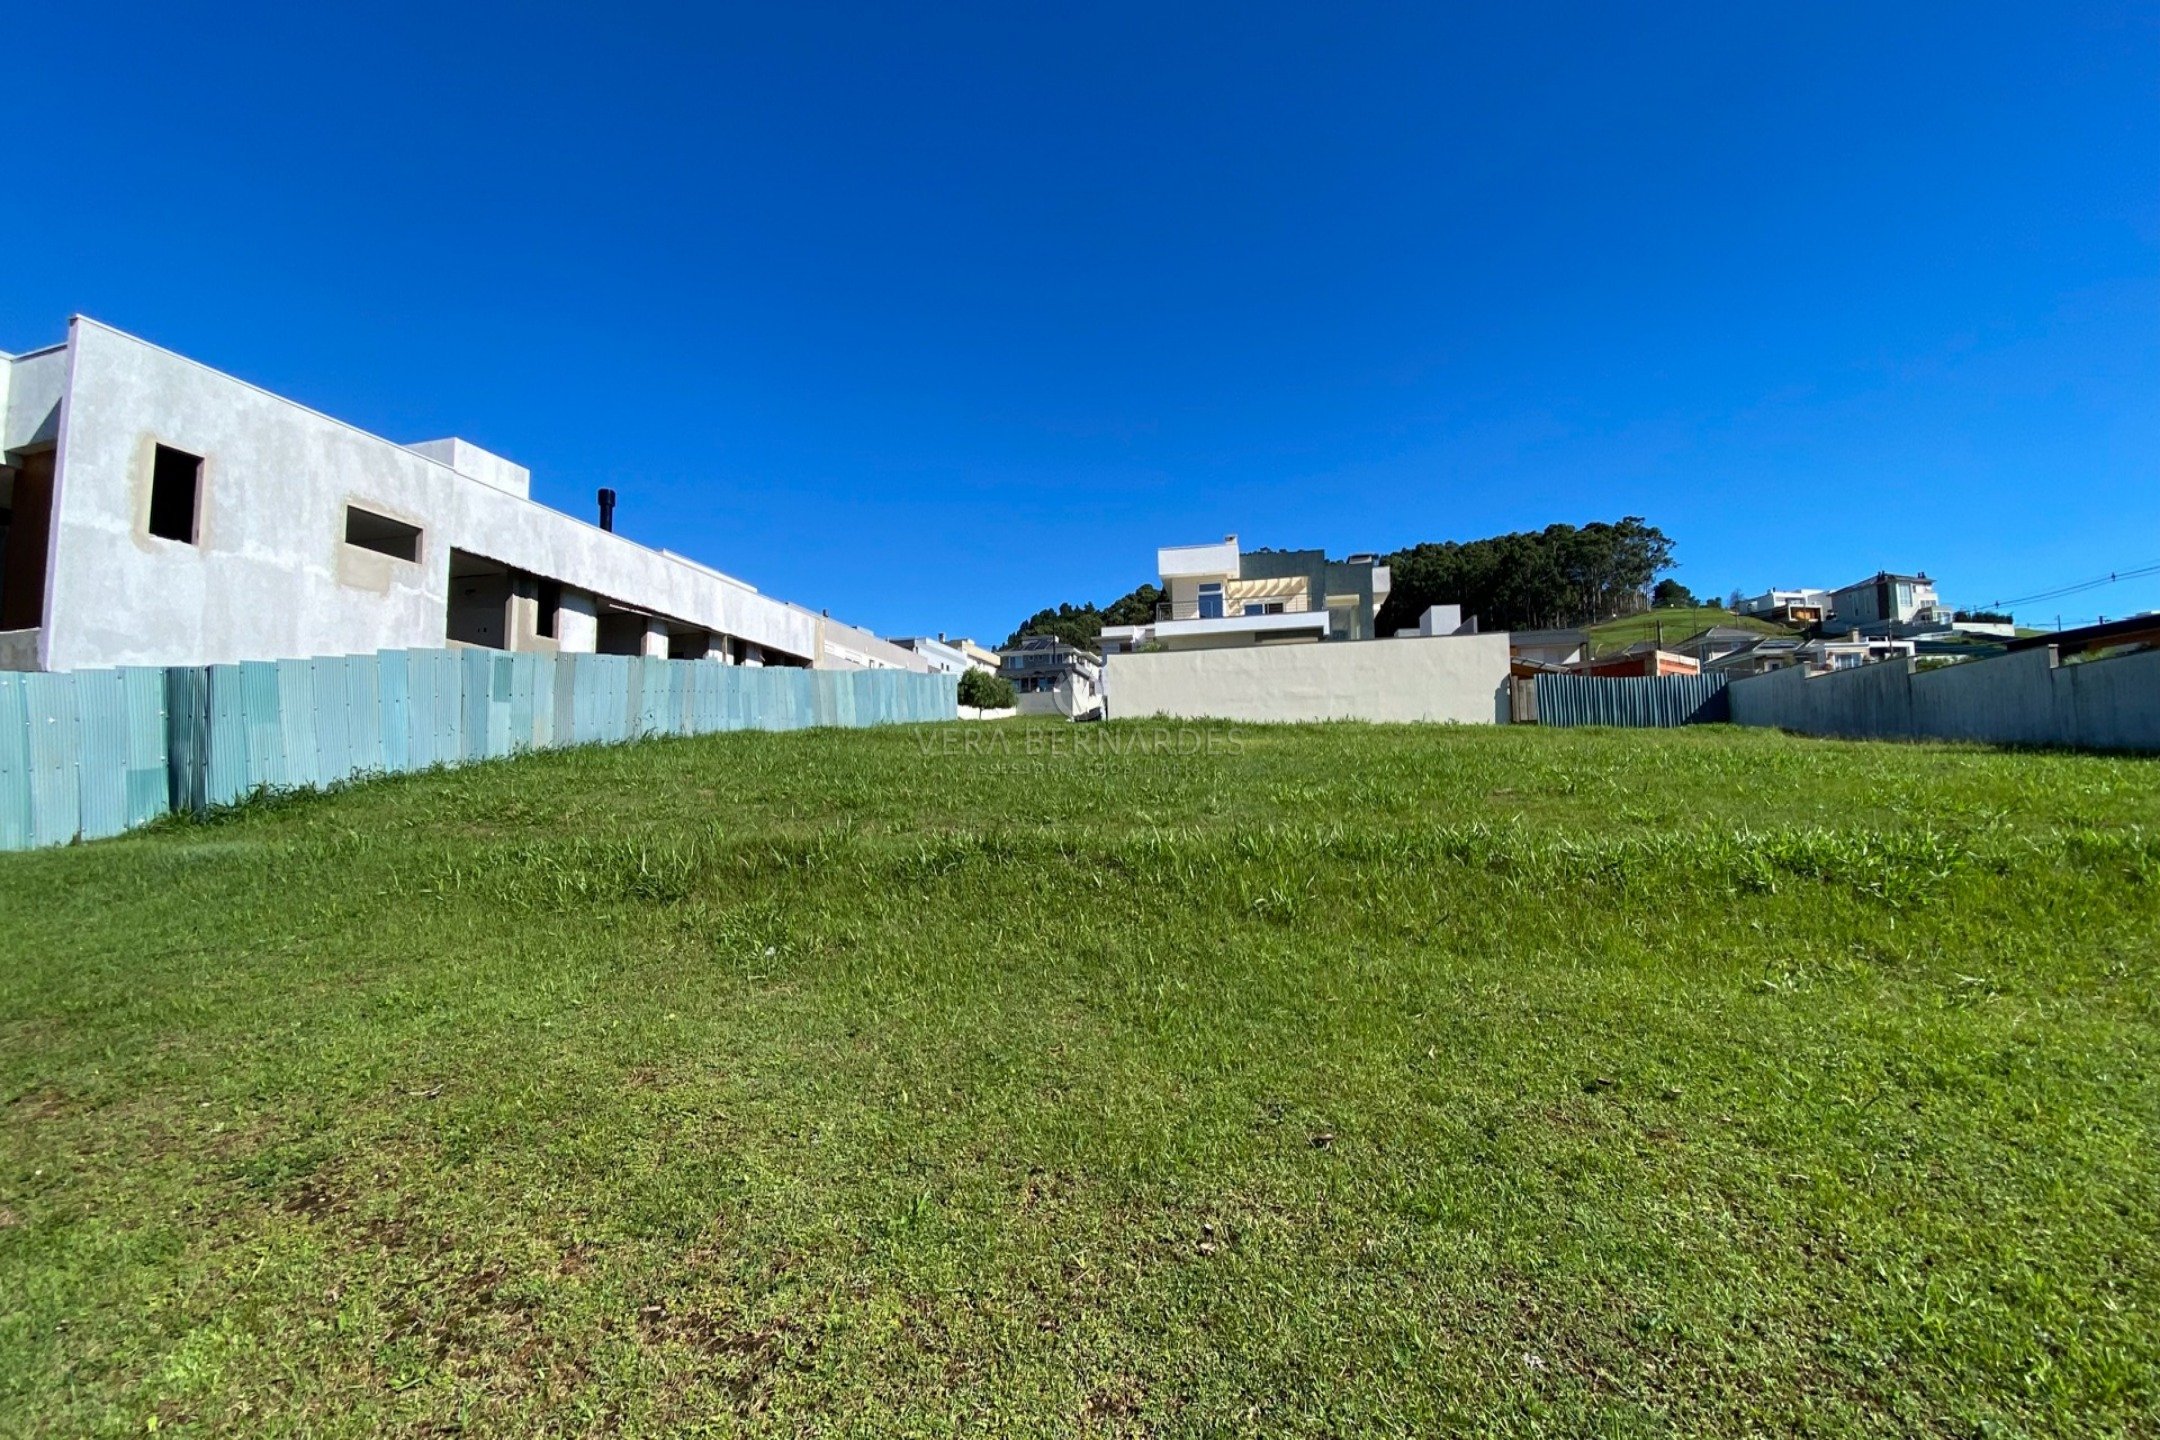 Terreno em Condomínio à venda com 616m² no bairro Alphaville, Zona Sul de Porto Alegre